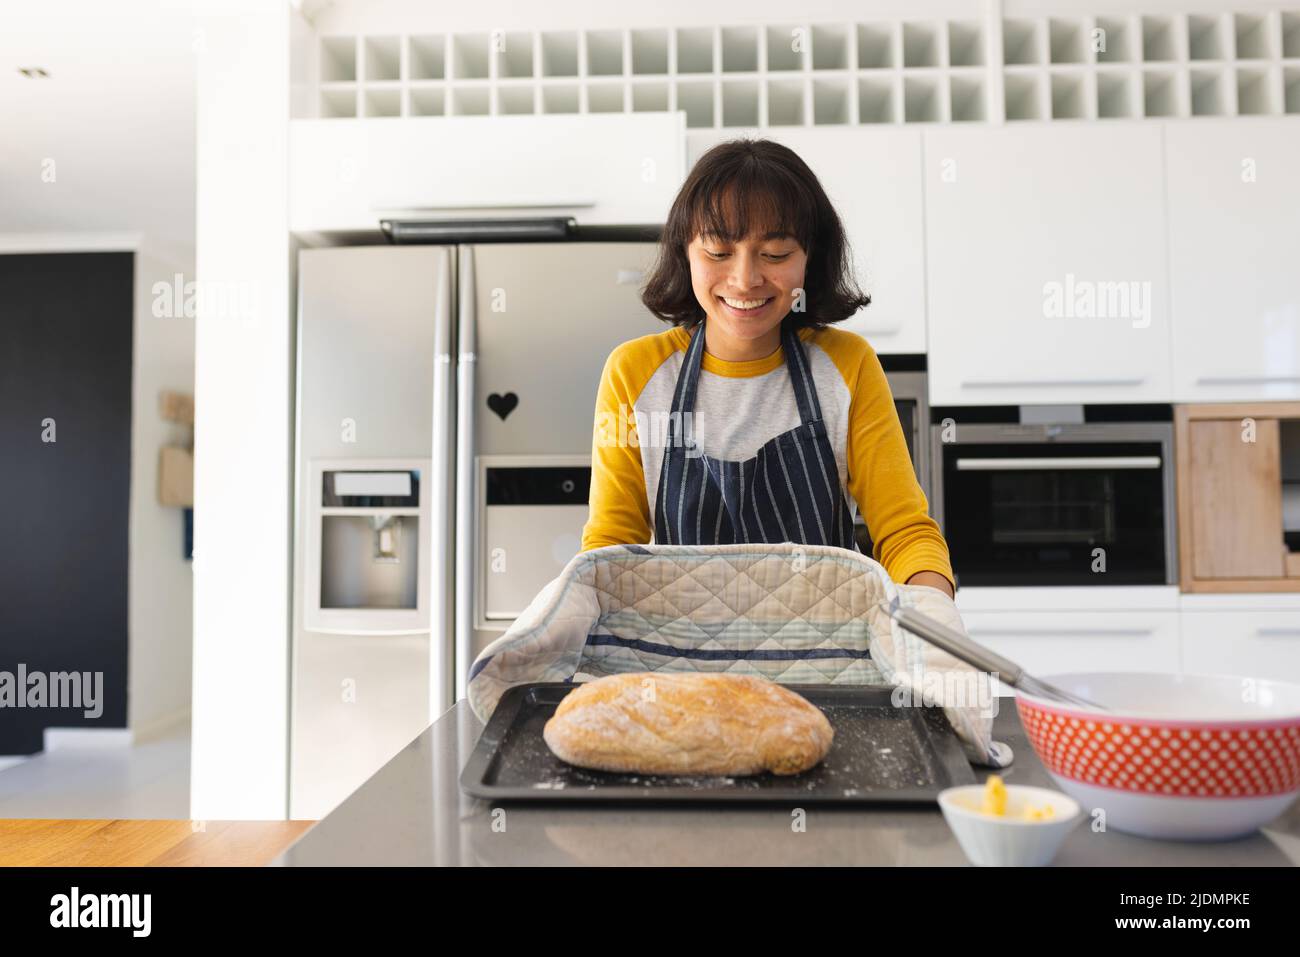 Lächelnde asiatische junge Frau mit kurzen Haaren hält frisch gebackenes Brot auf Kücheninsel Stockfoto